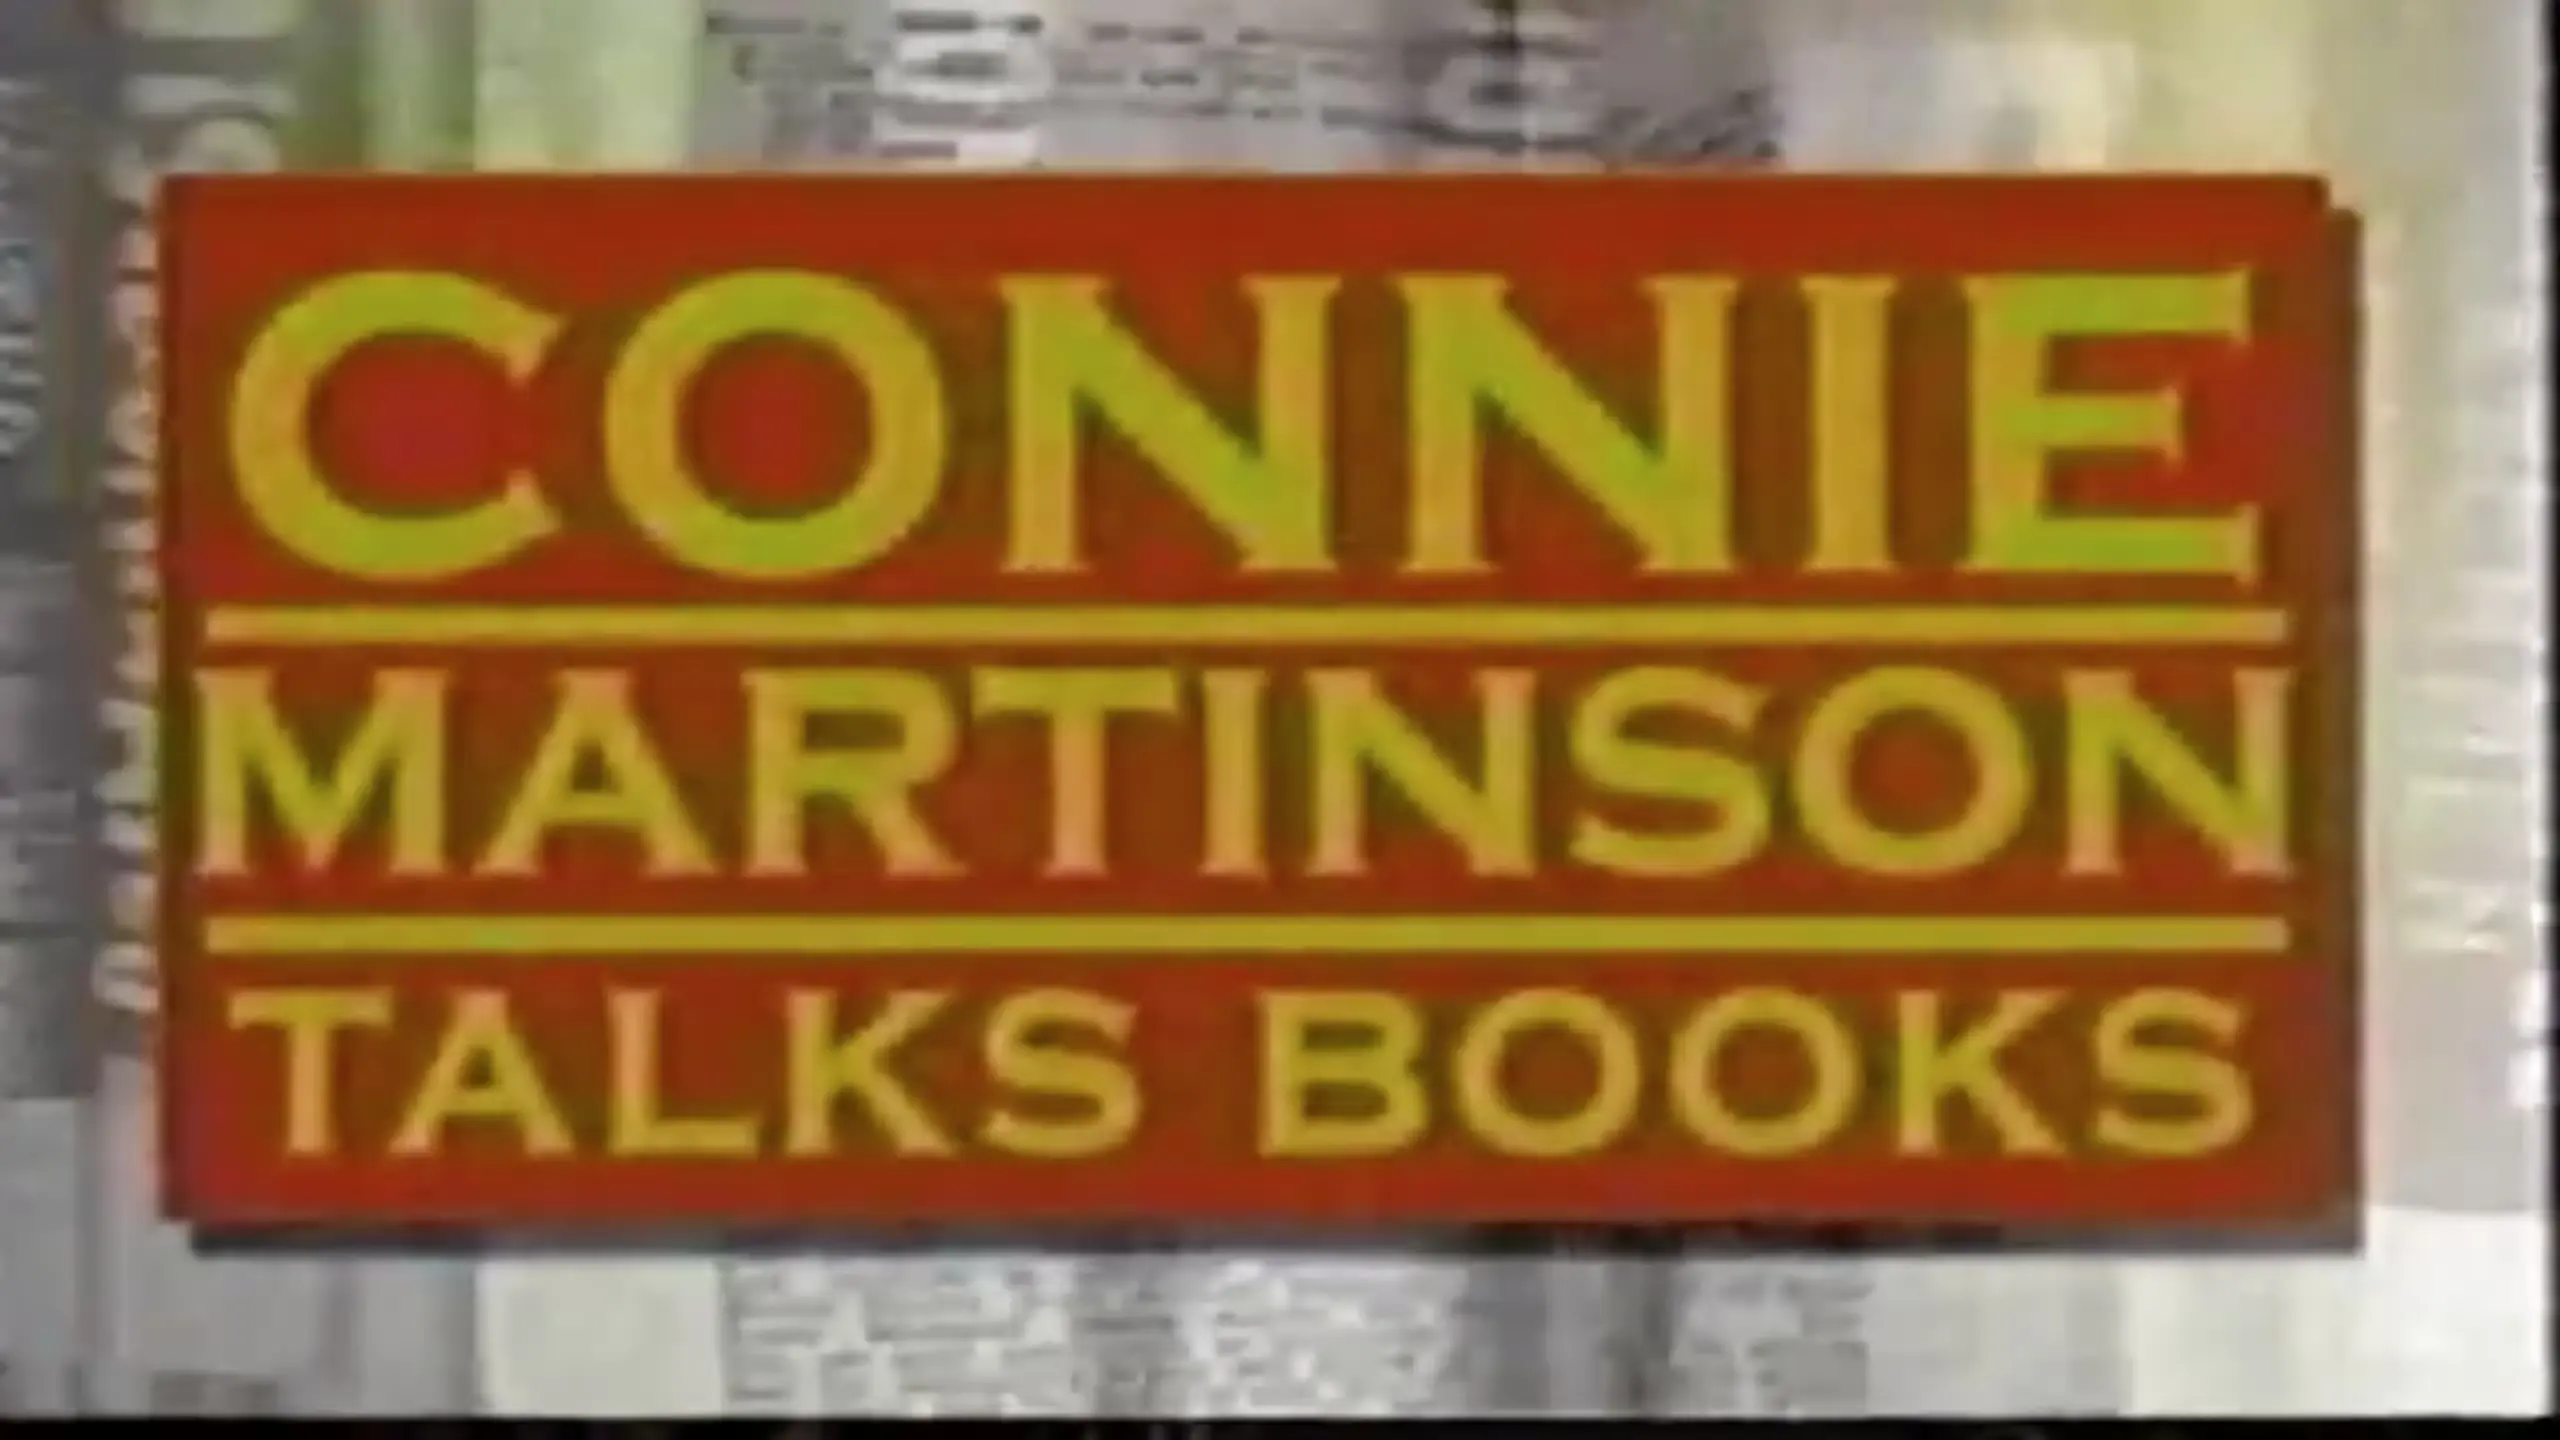 Connie Martinson Talks Books